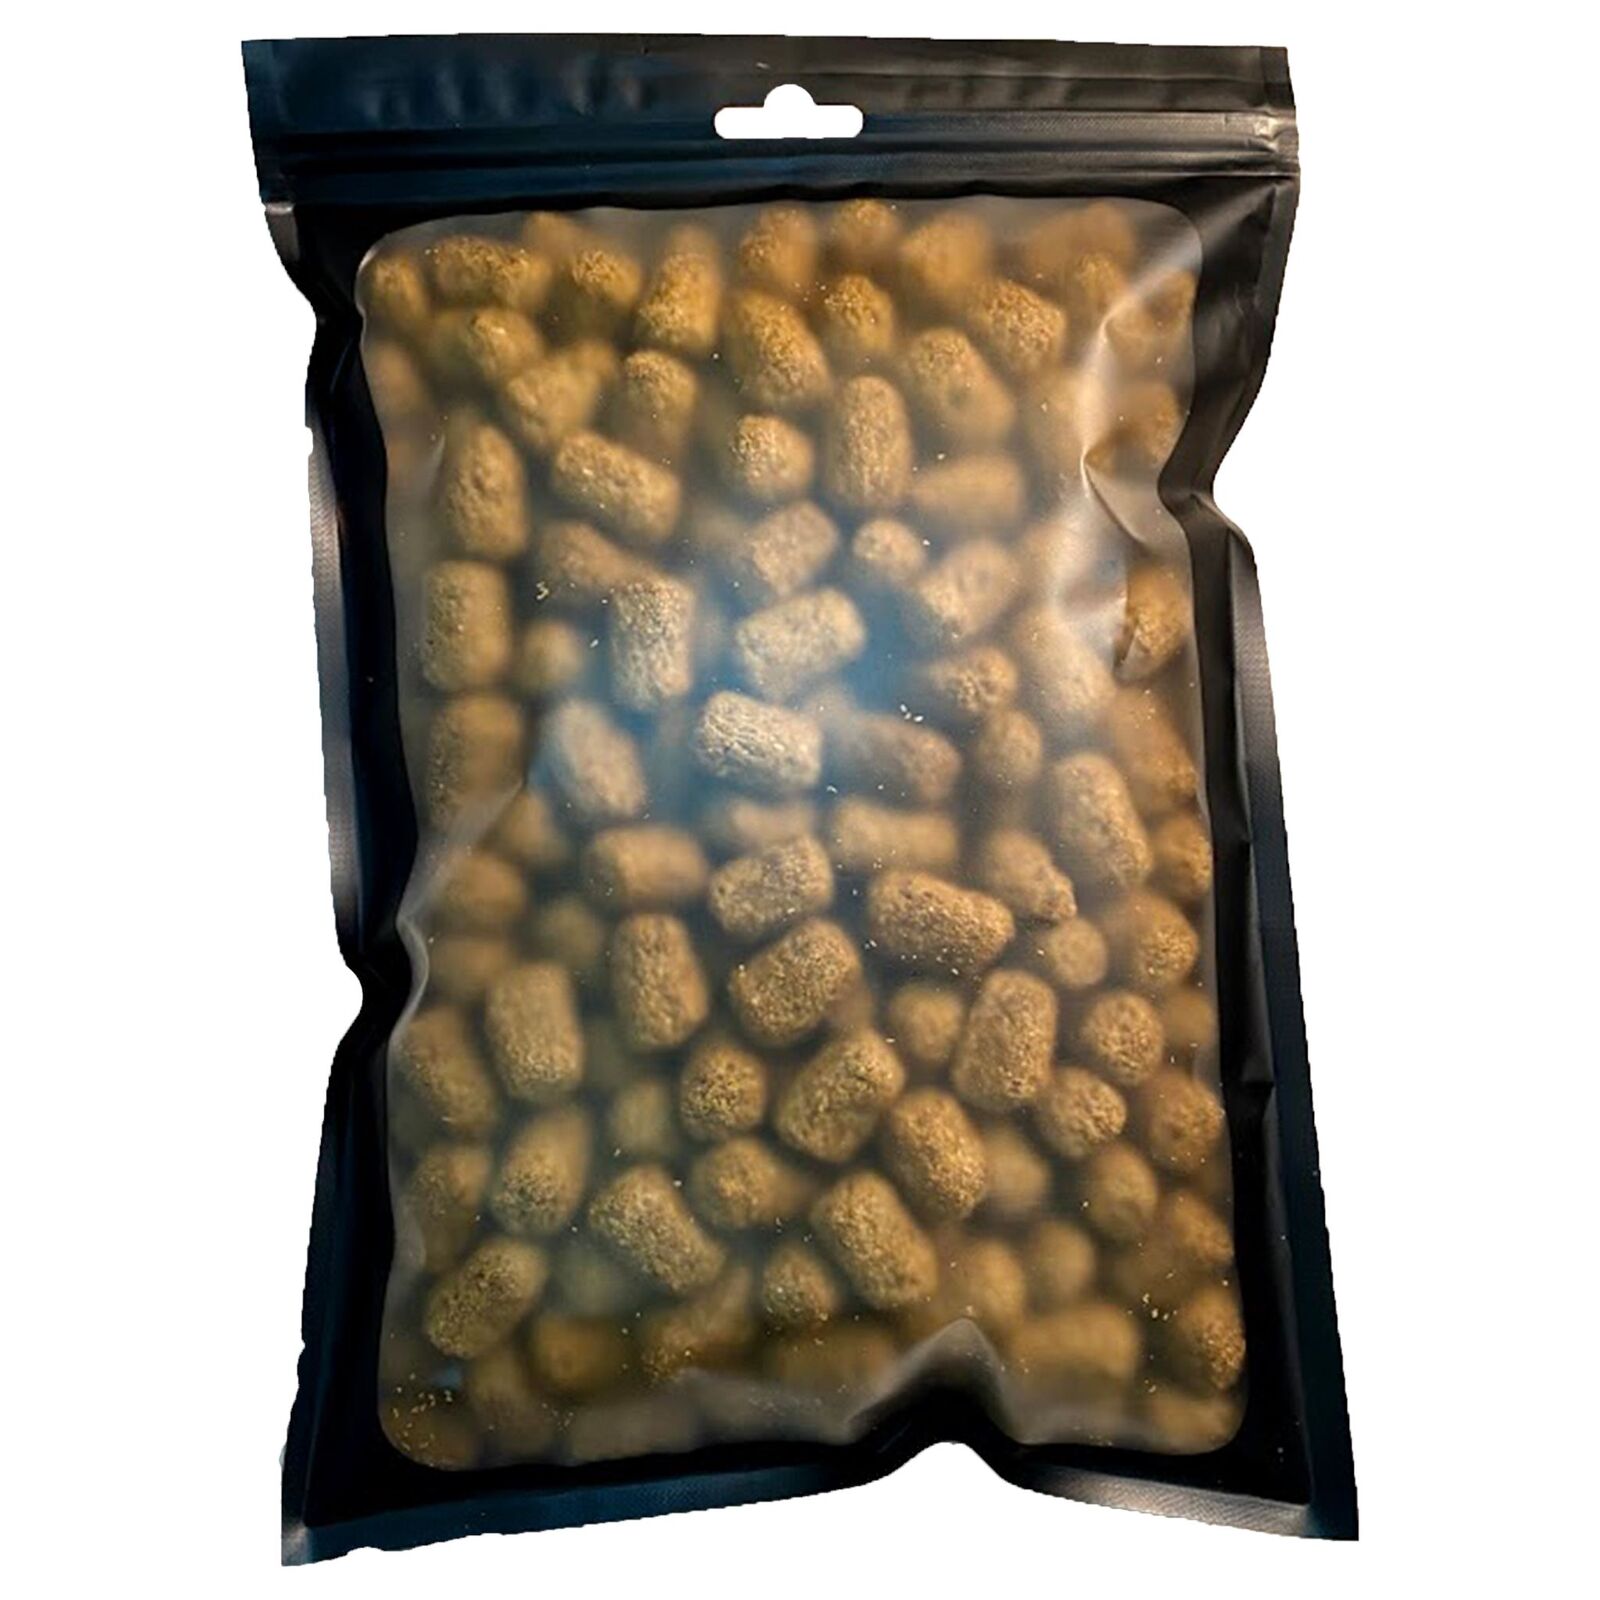 Delicious and Nutritious tortoise diet 1lb - 8lb bag